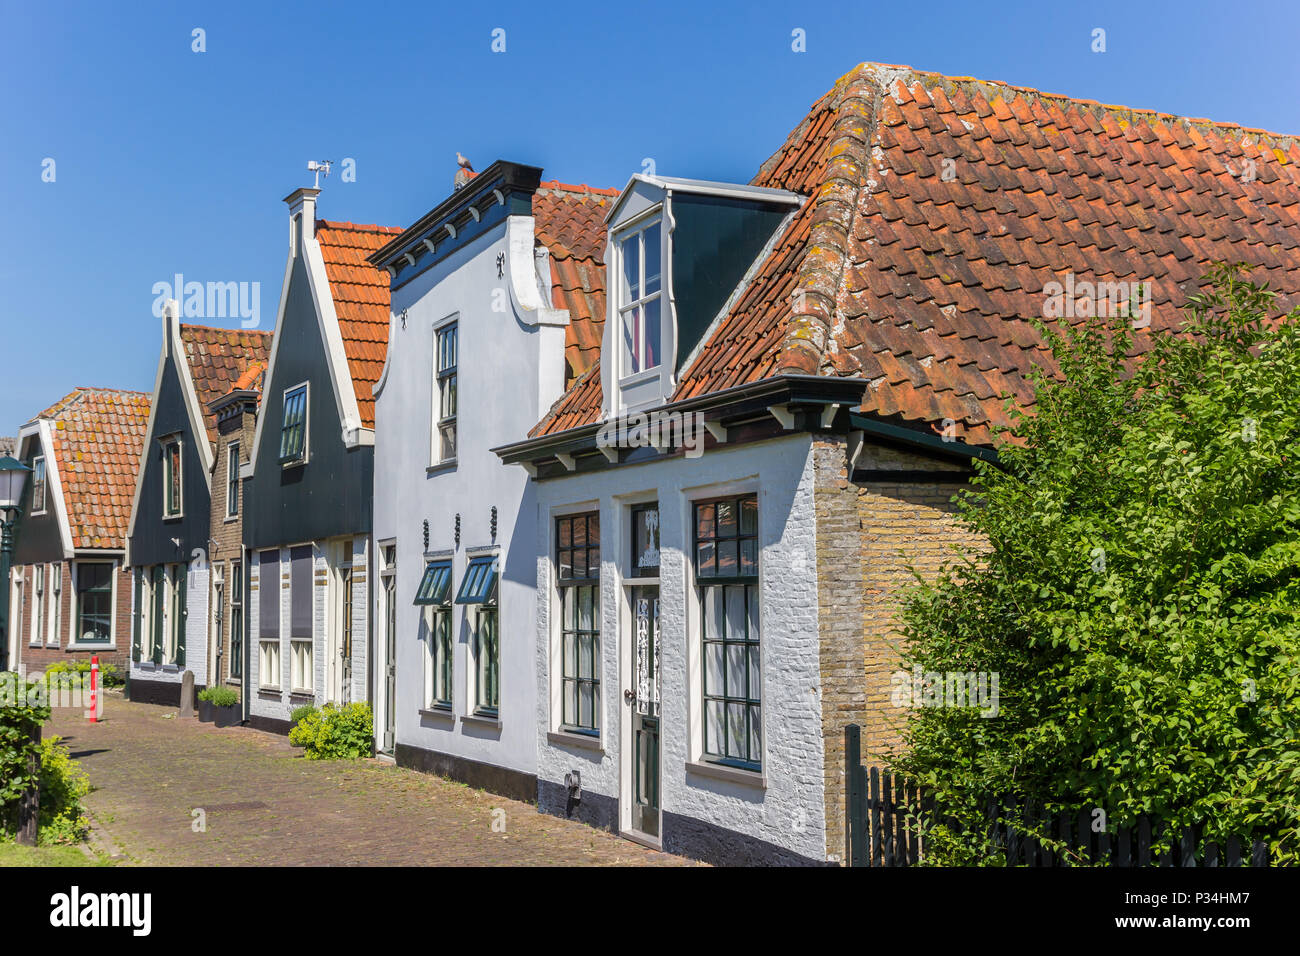 Maisons anciennes de l'île de Texel Oudeschild, Pays-Bas Banque D'Images